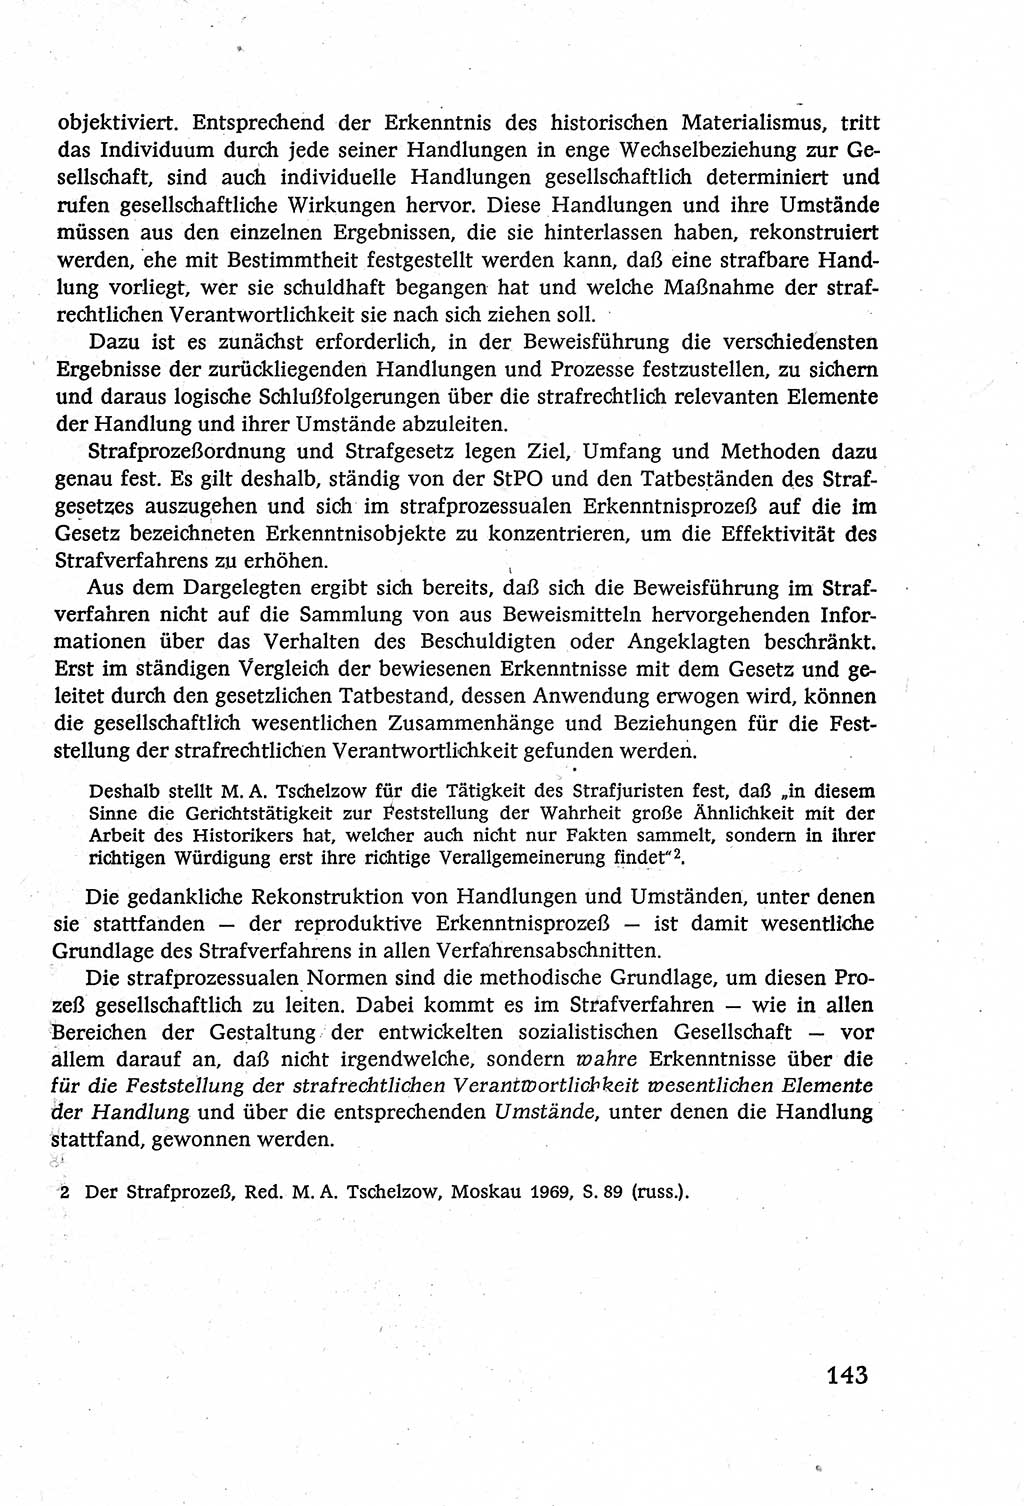 Strafverfahrensrecht [Deutsche Demokratische Republik (DDR)], Lehrbuch 1977, Seite 143 (Strafverf.-R. DDR Lb. 1977, S. 143)